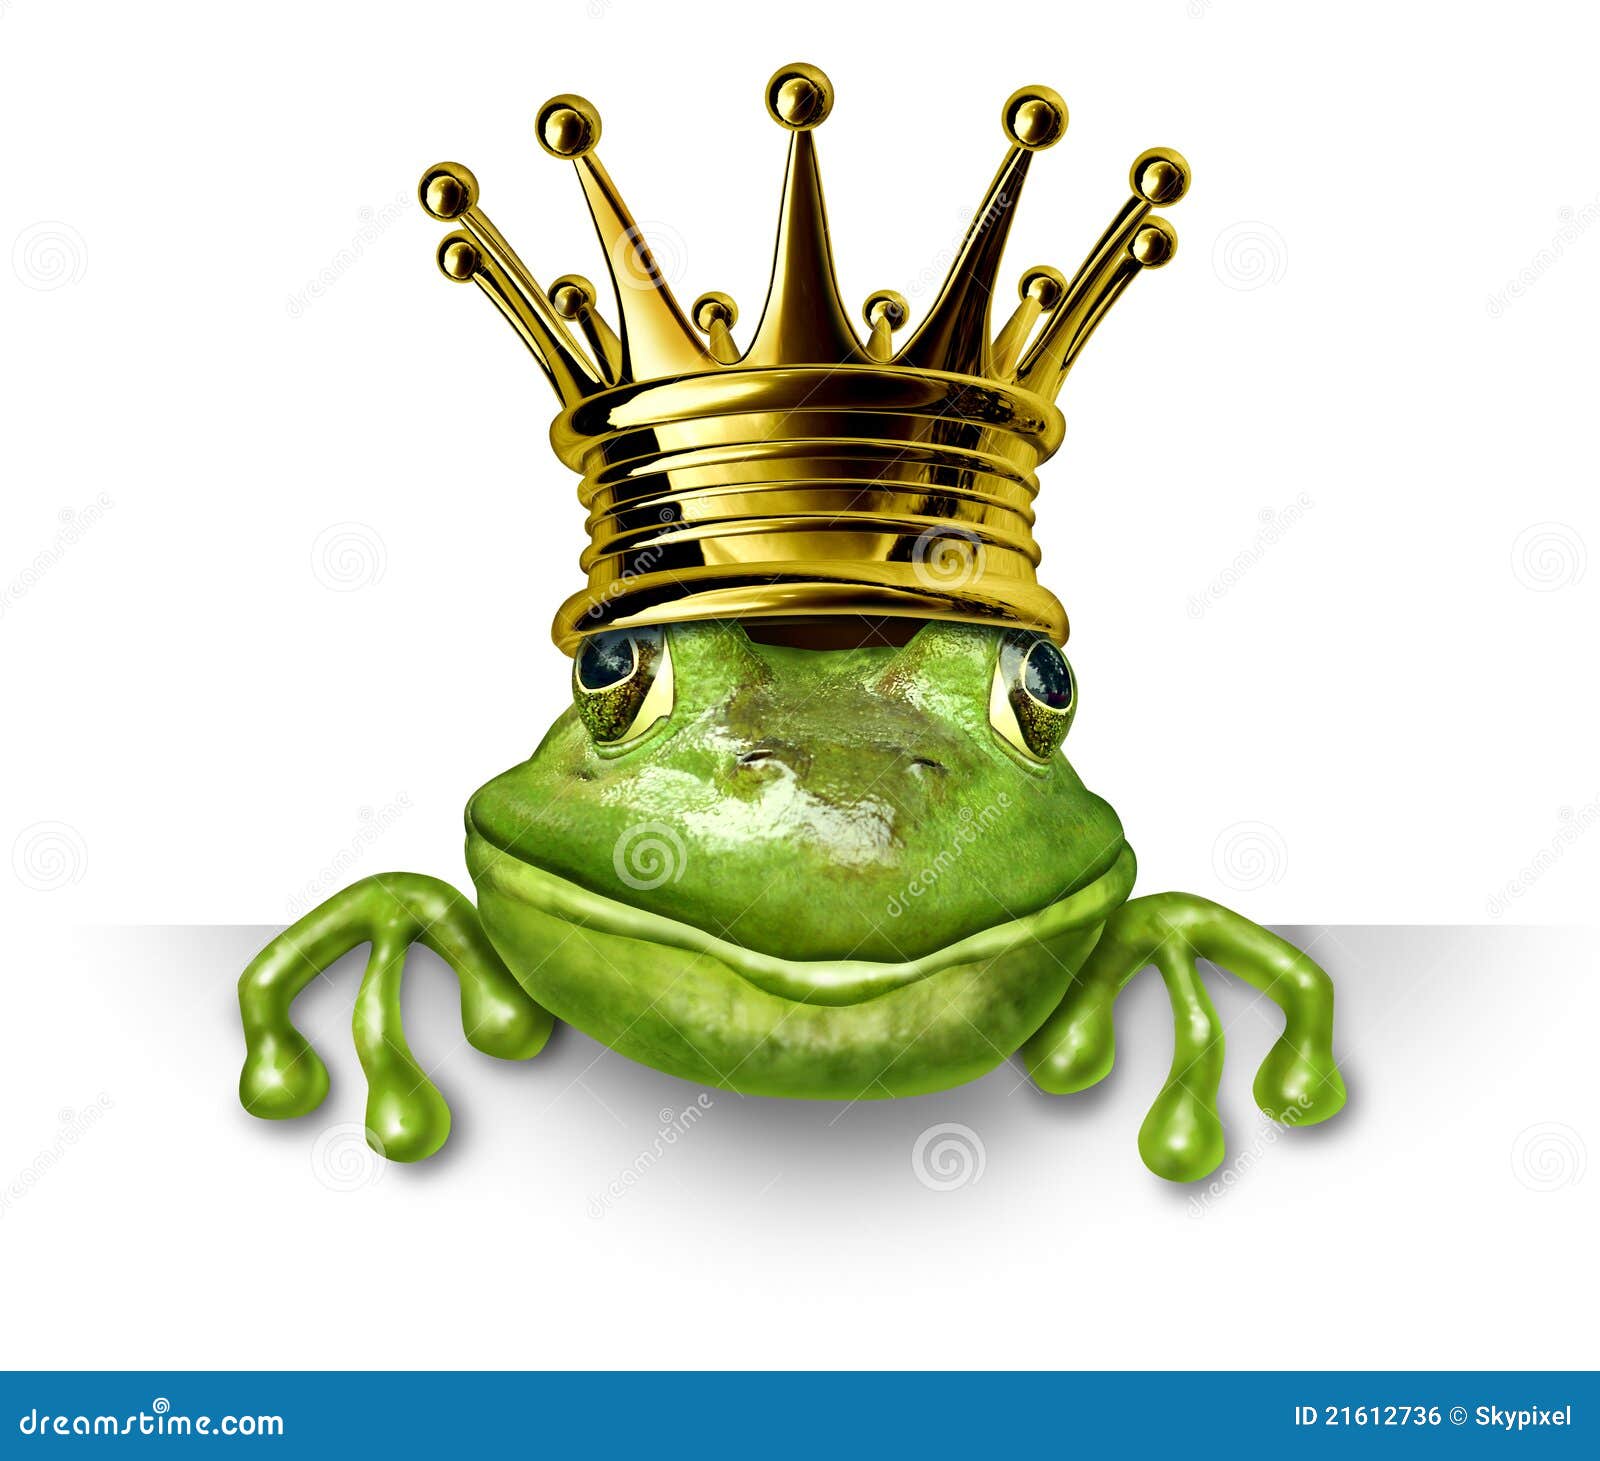 https://thumbs.dreamstime.com/z/de-prins-die-van-de-kikker-met-gouden-kroon-een-leeg-teken-houdt-21612736.jpg